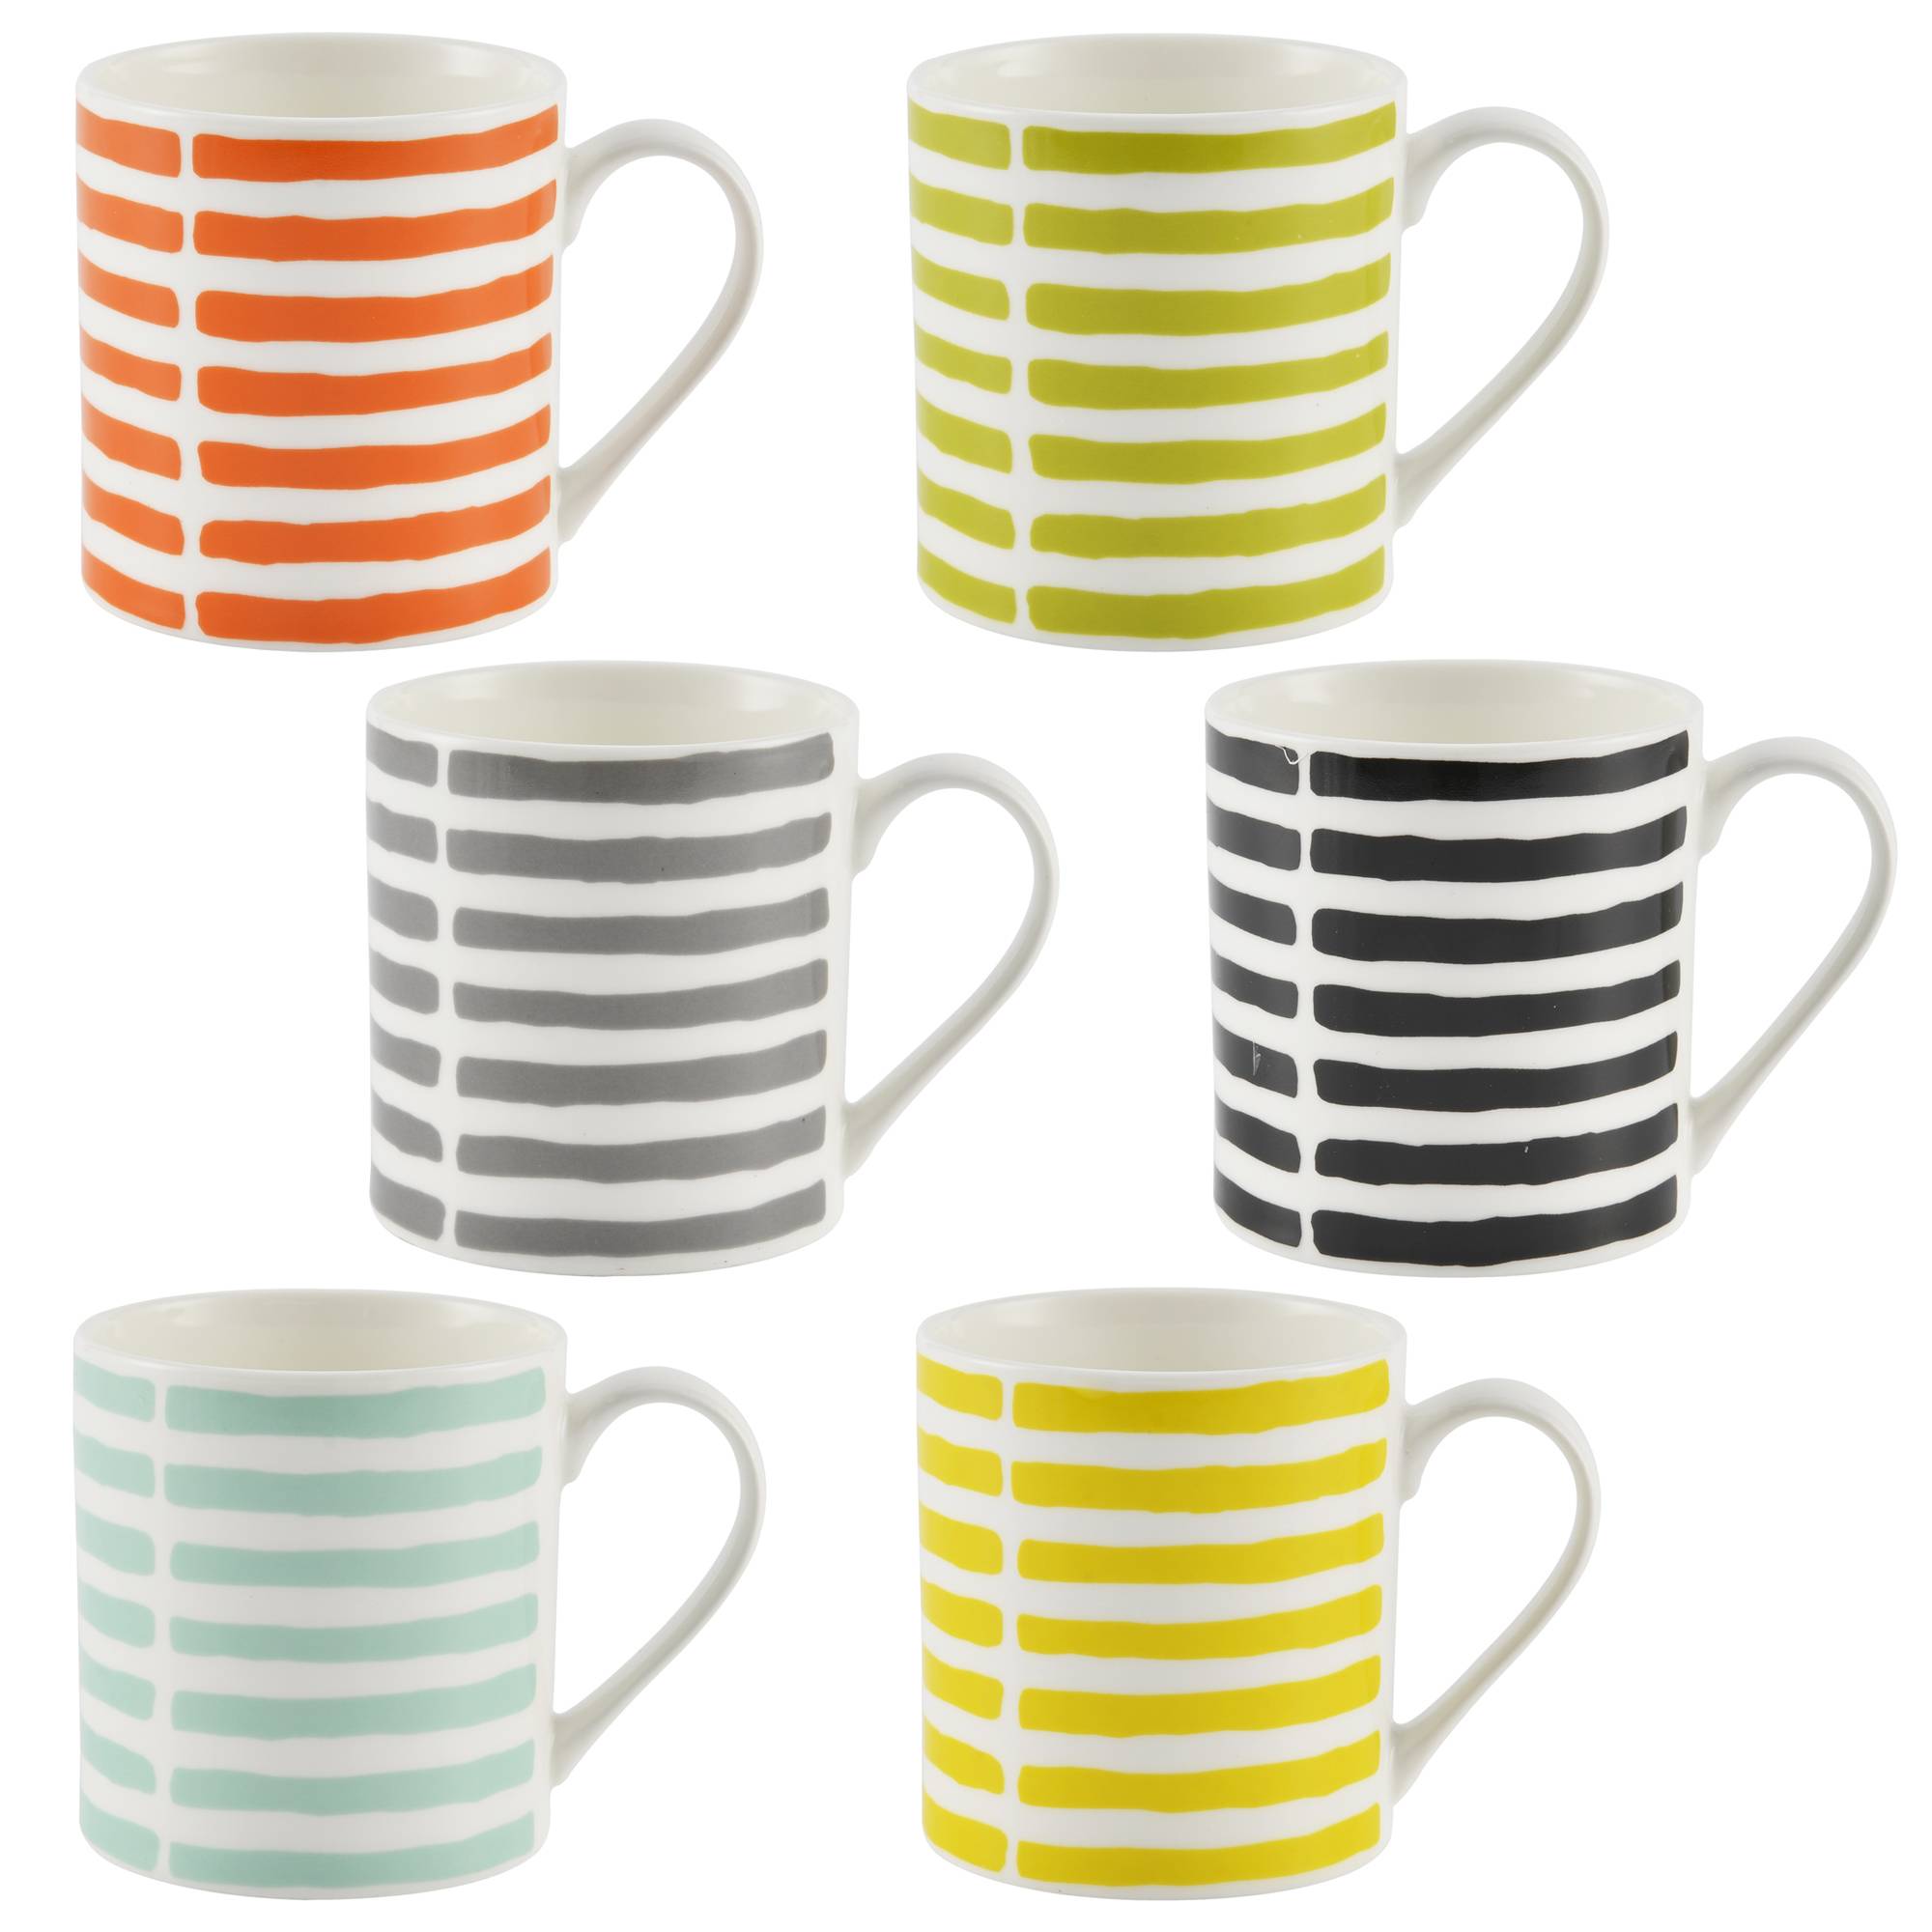 colorful ceramic mugs